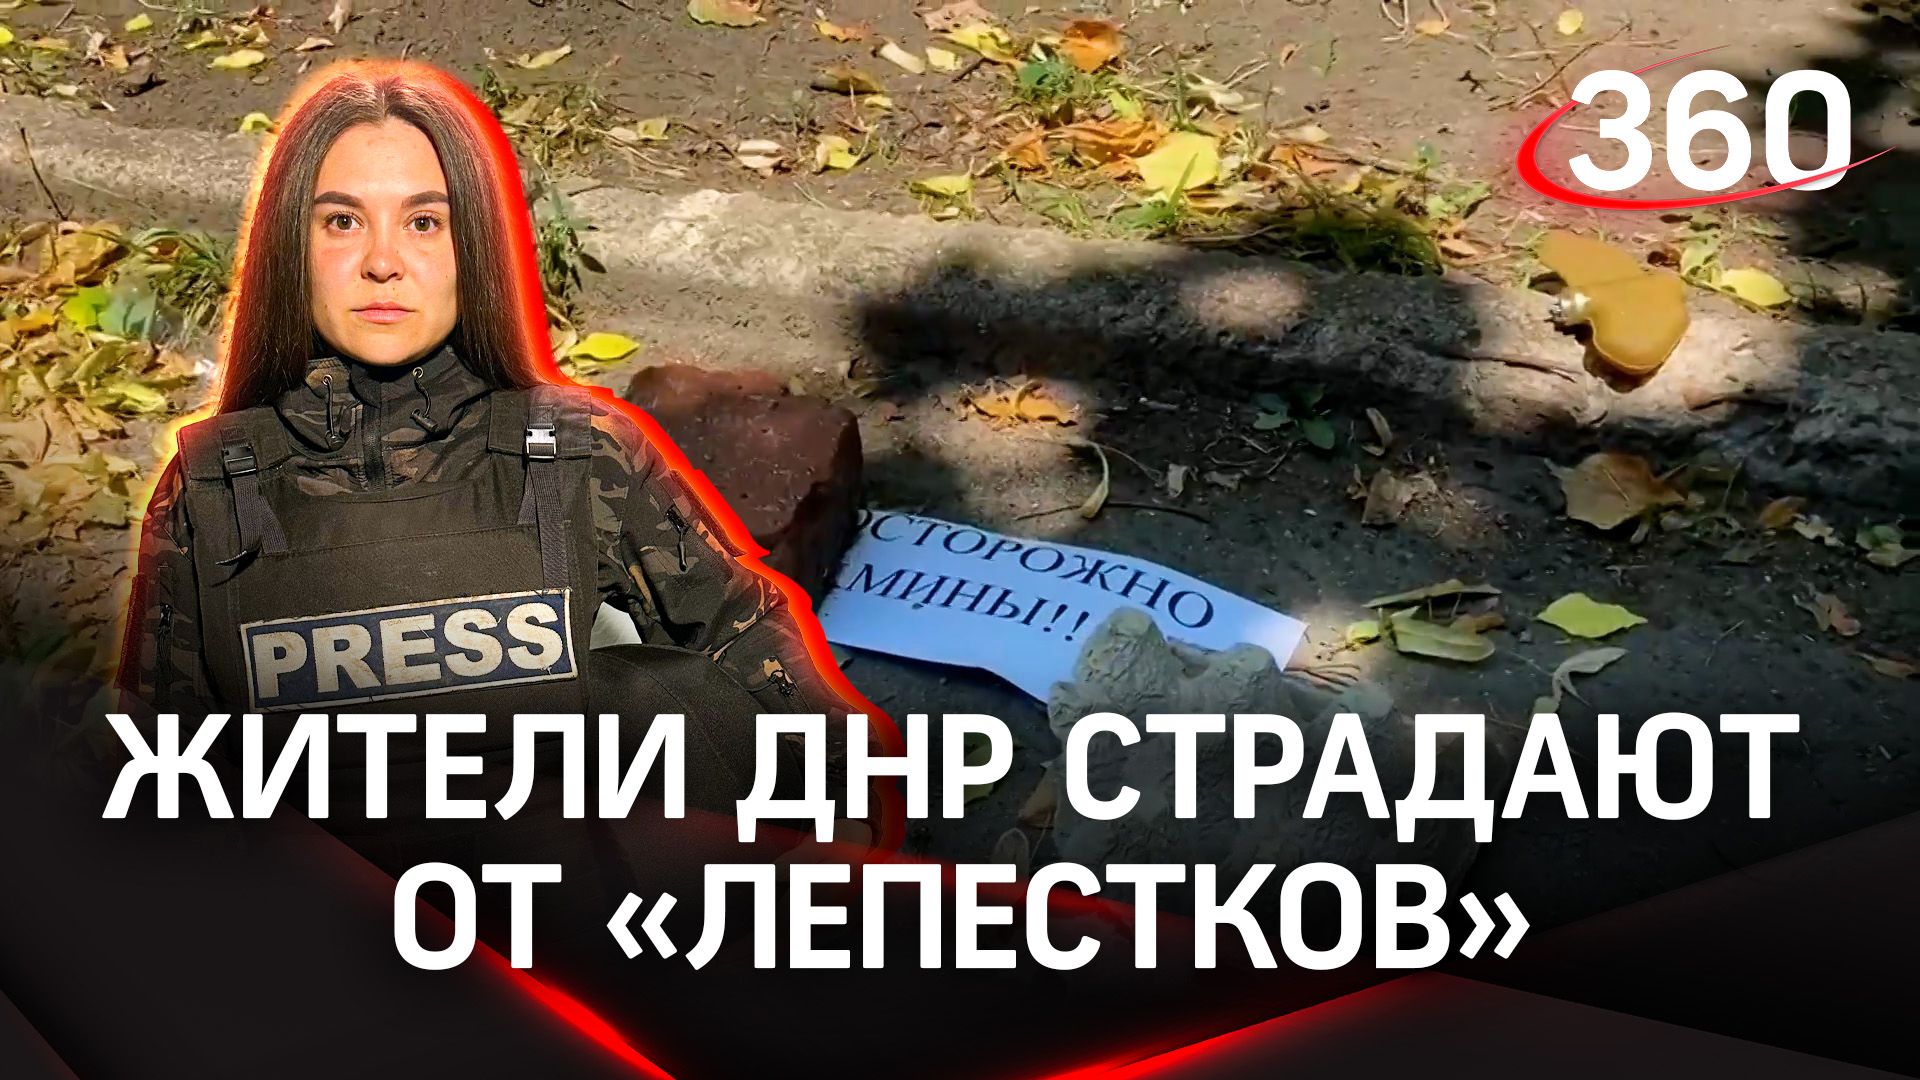 Женщина подорвалась на мине «Лепесток» в Донецке | «Дневник корреспондента» — Виктория Комогорцева